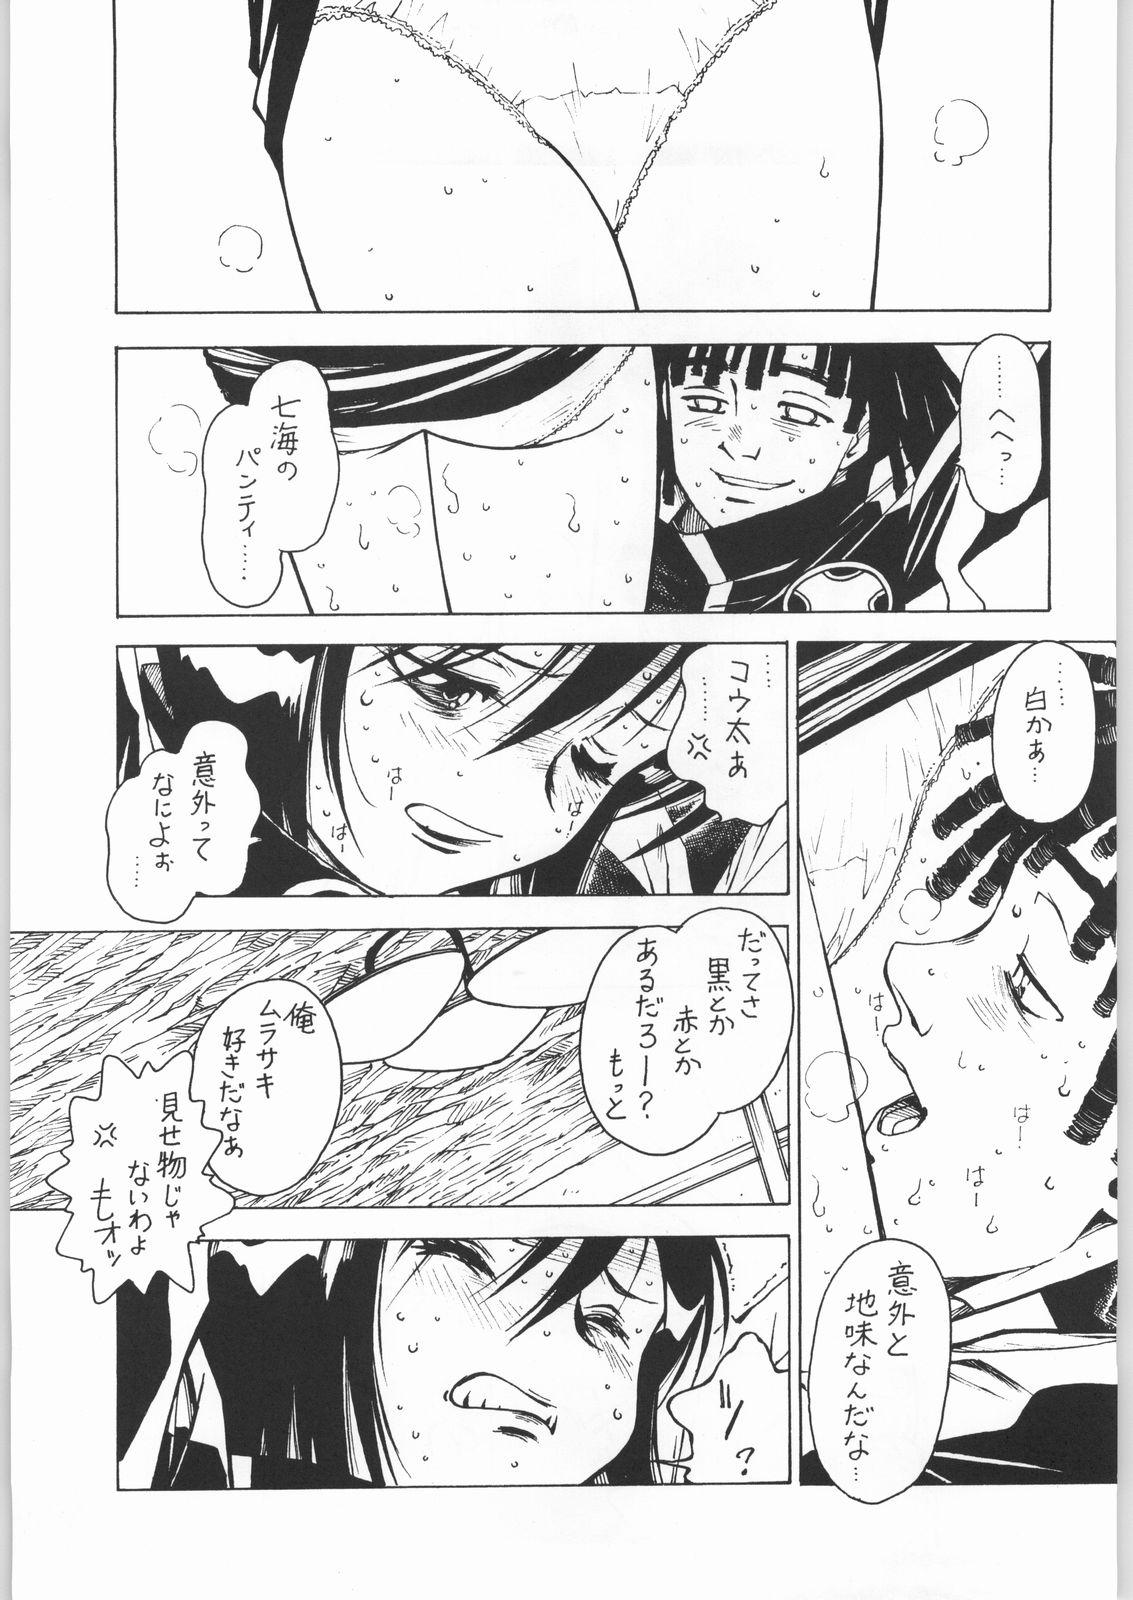 Girl Gets Fucked Nanami Tougarashi - Ninpuu sentai hurricaneger Kitchen - Page 6